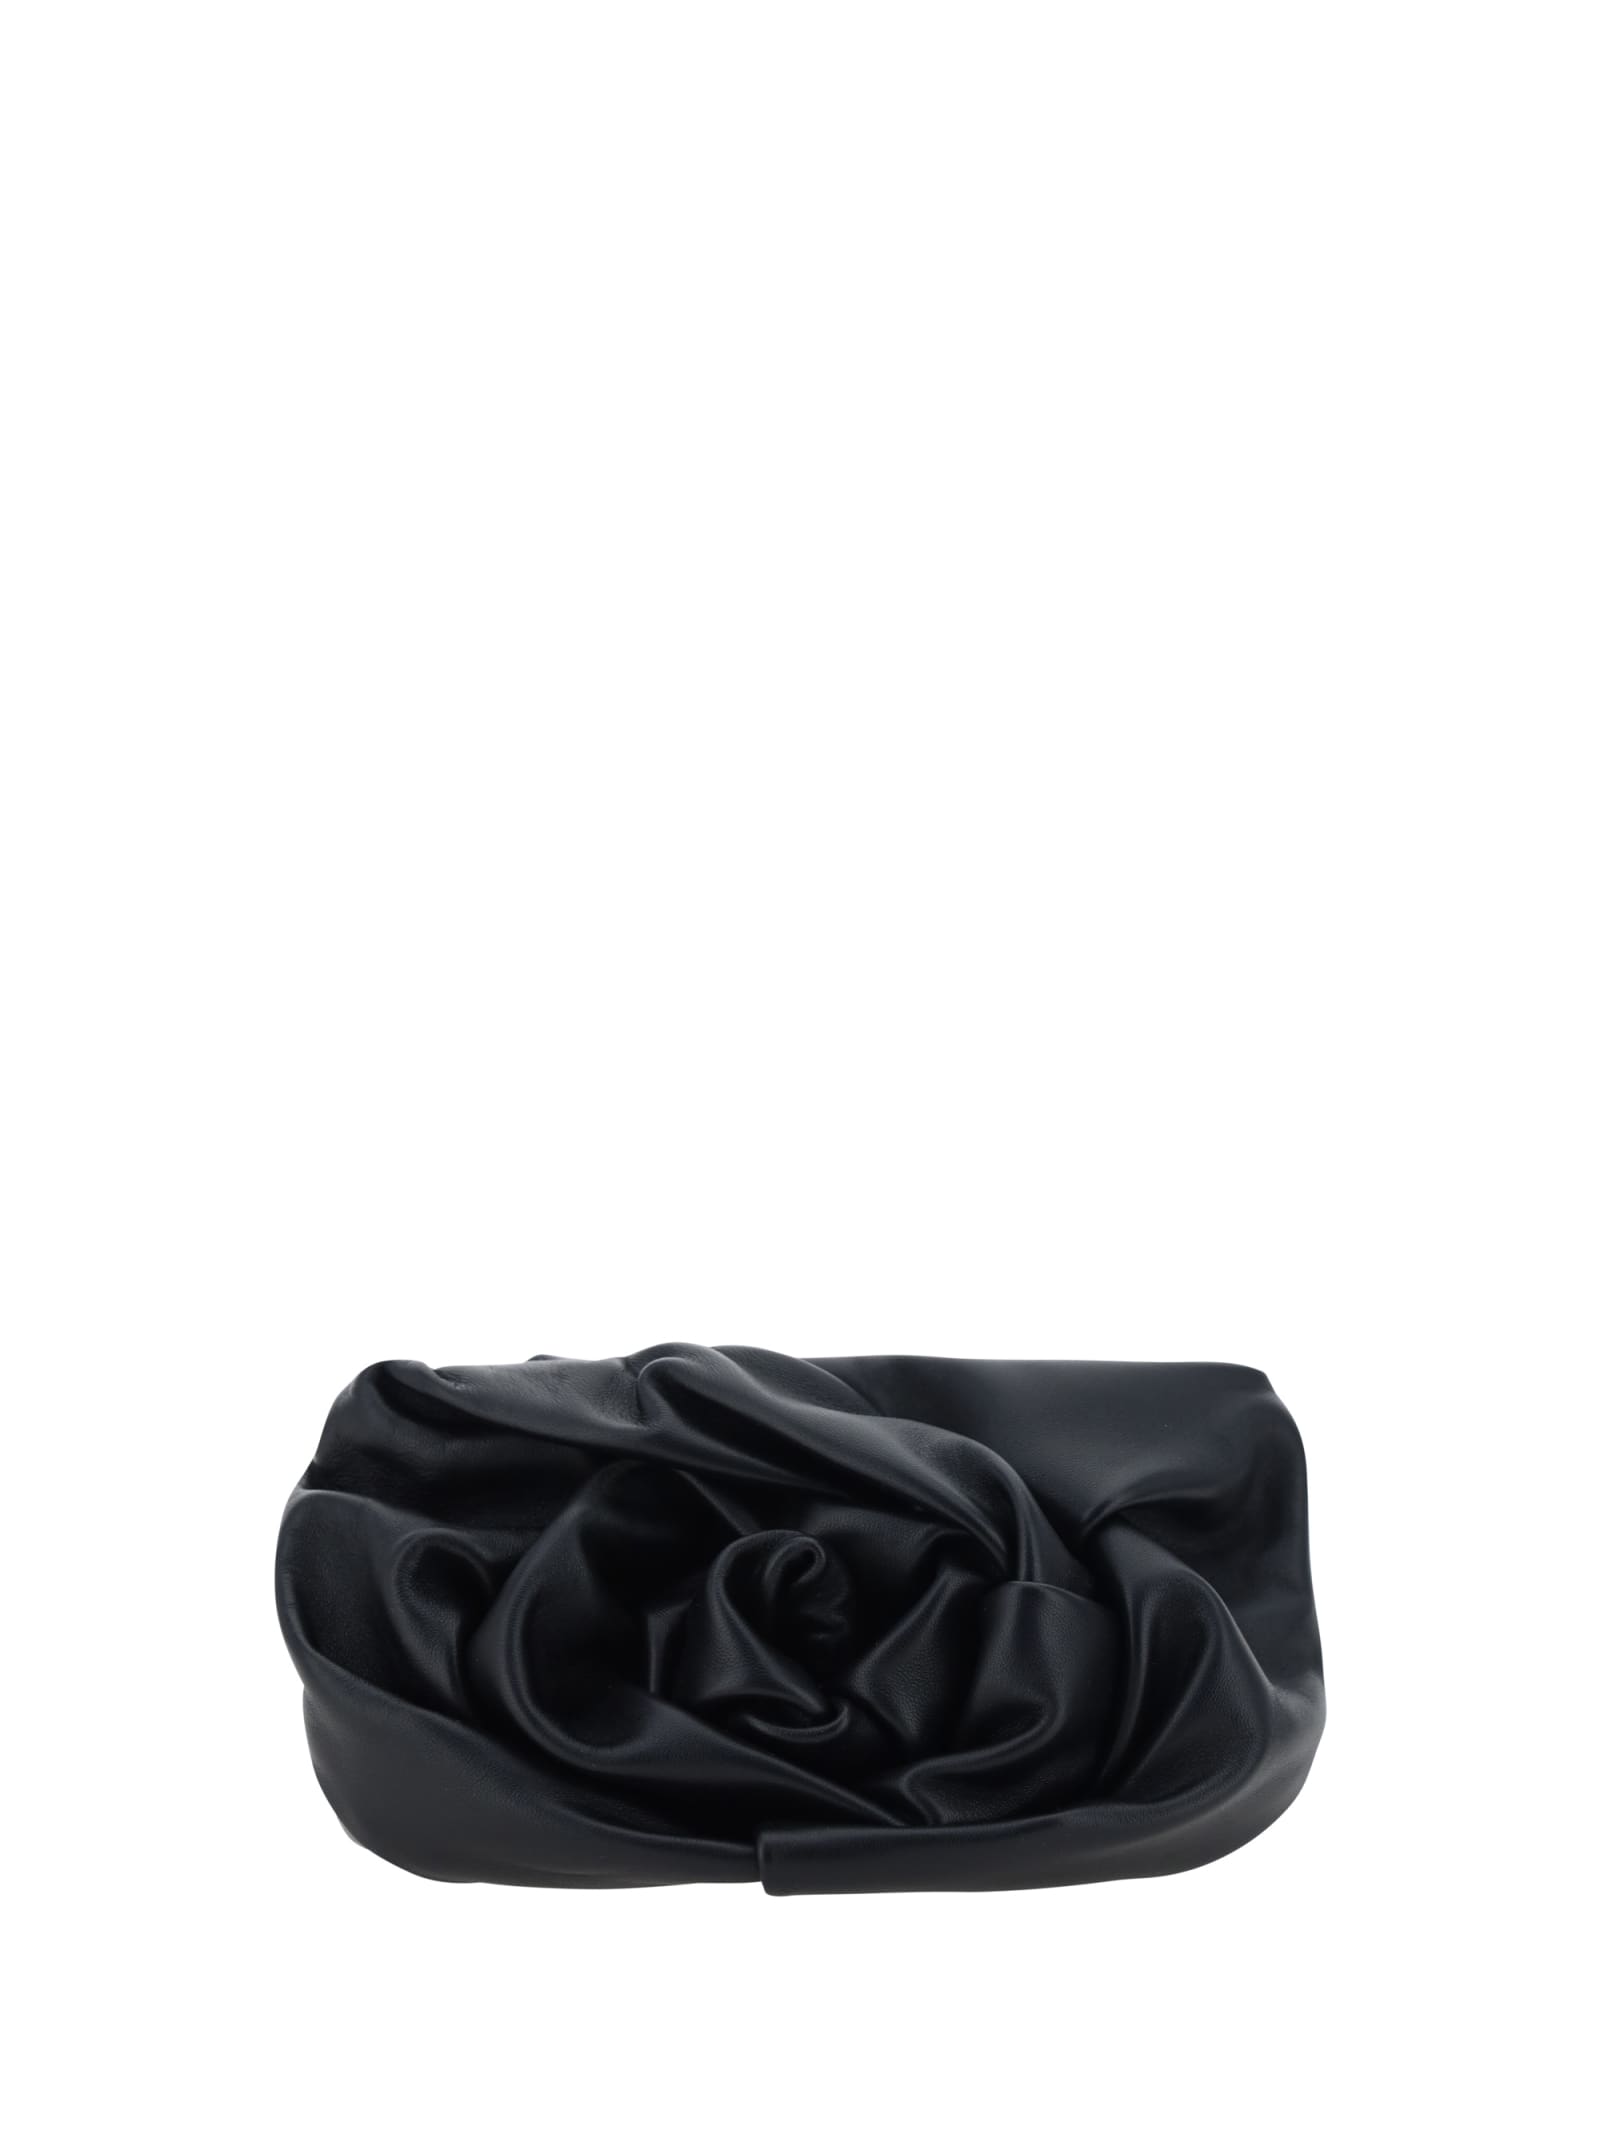 Burberry Rose Clutch Bag In Black